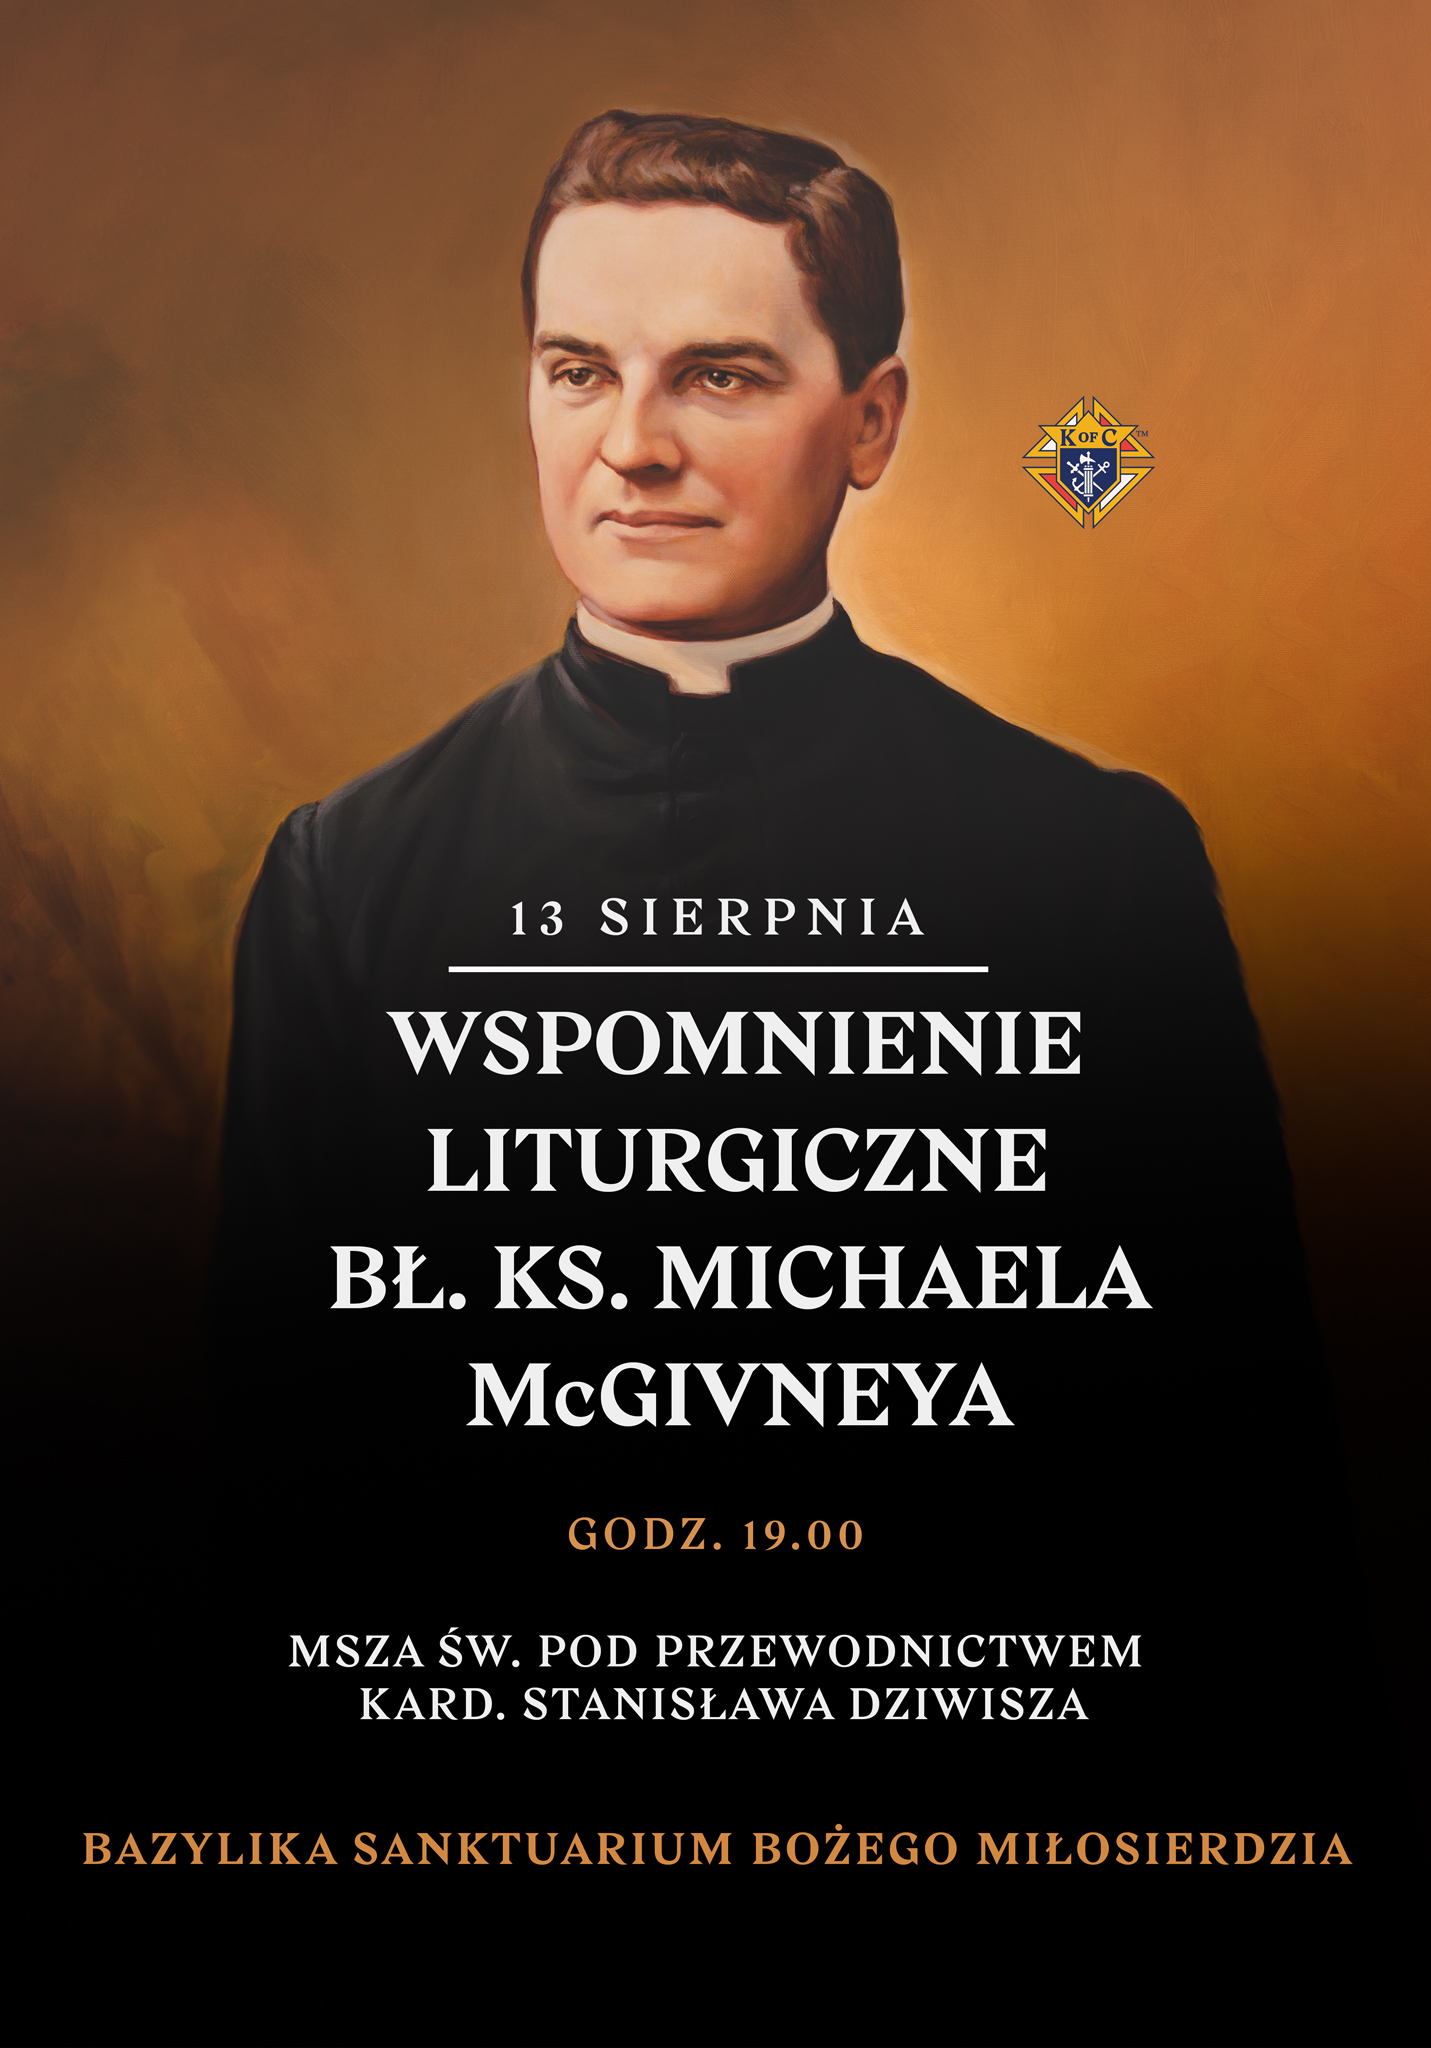 Pierwsze wspomnienie liturgiczne bł. ks. Michaela McGivneya